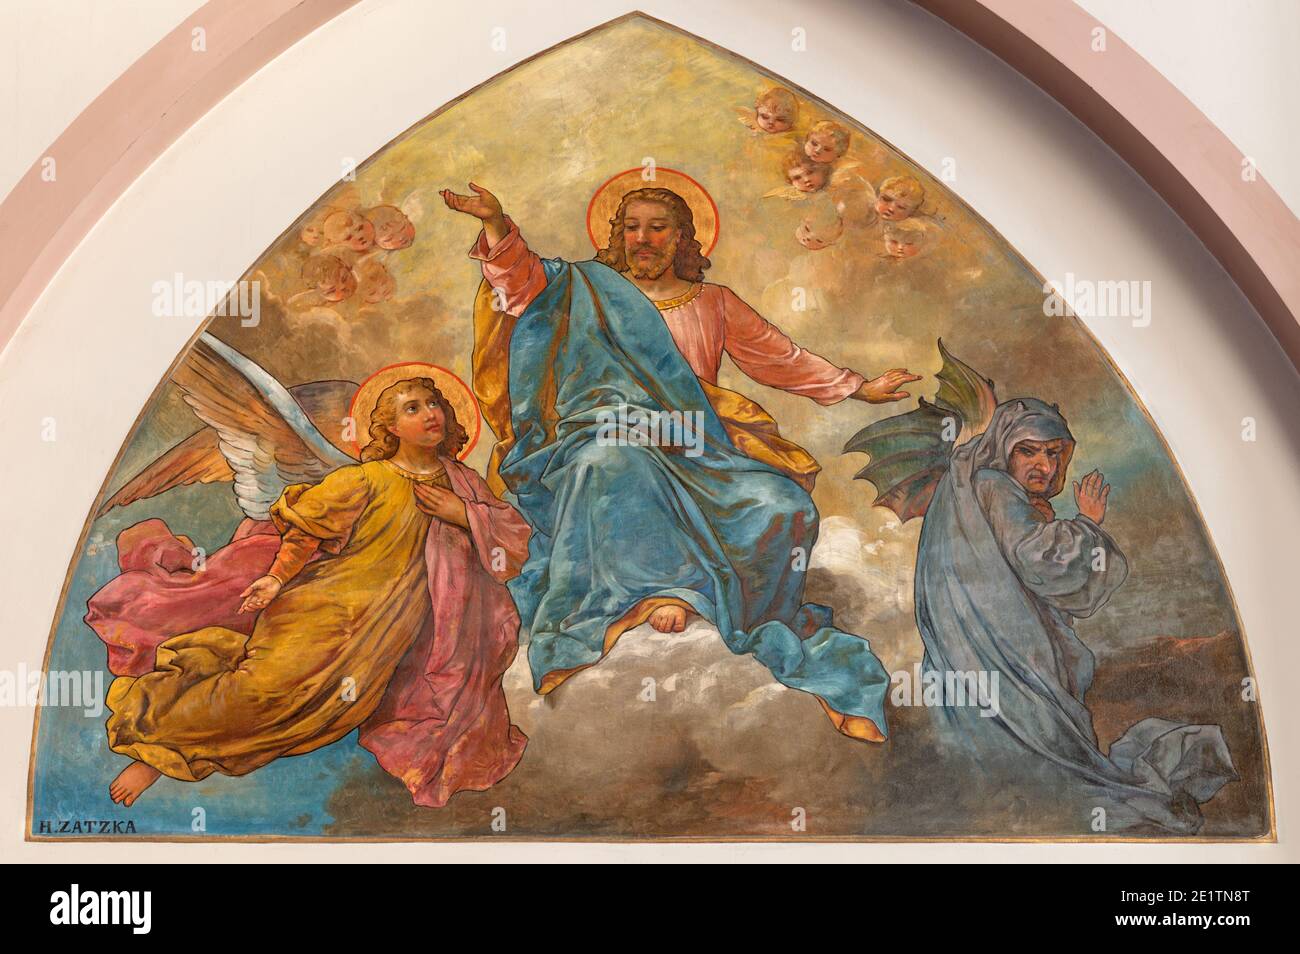 WIEN, AUSTIRA - 22. OKTOBER 2020: Fresko der Versuchung Jesu auf dem Berg in der Kirche Laurentiuskirche von Hans Zacka Ende 19. Jh. Stockfoto